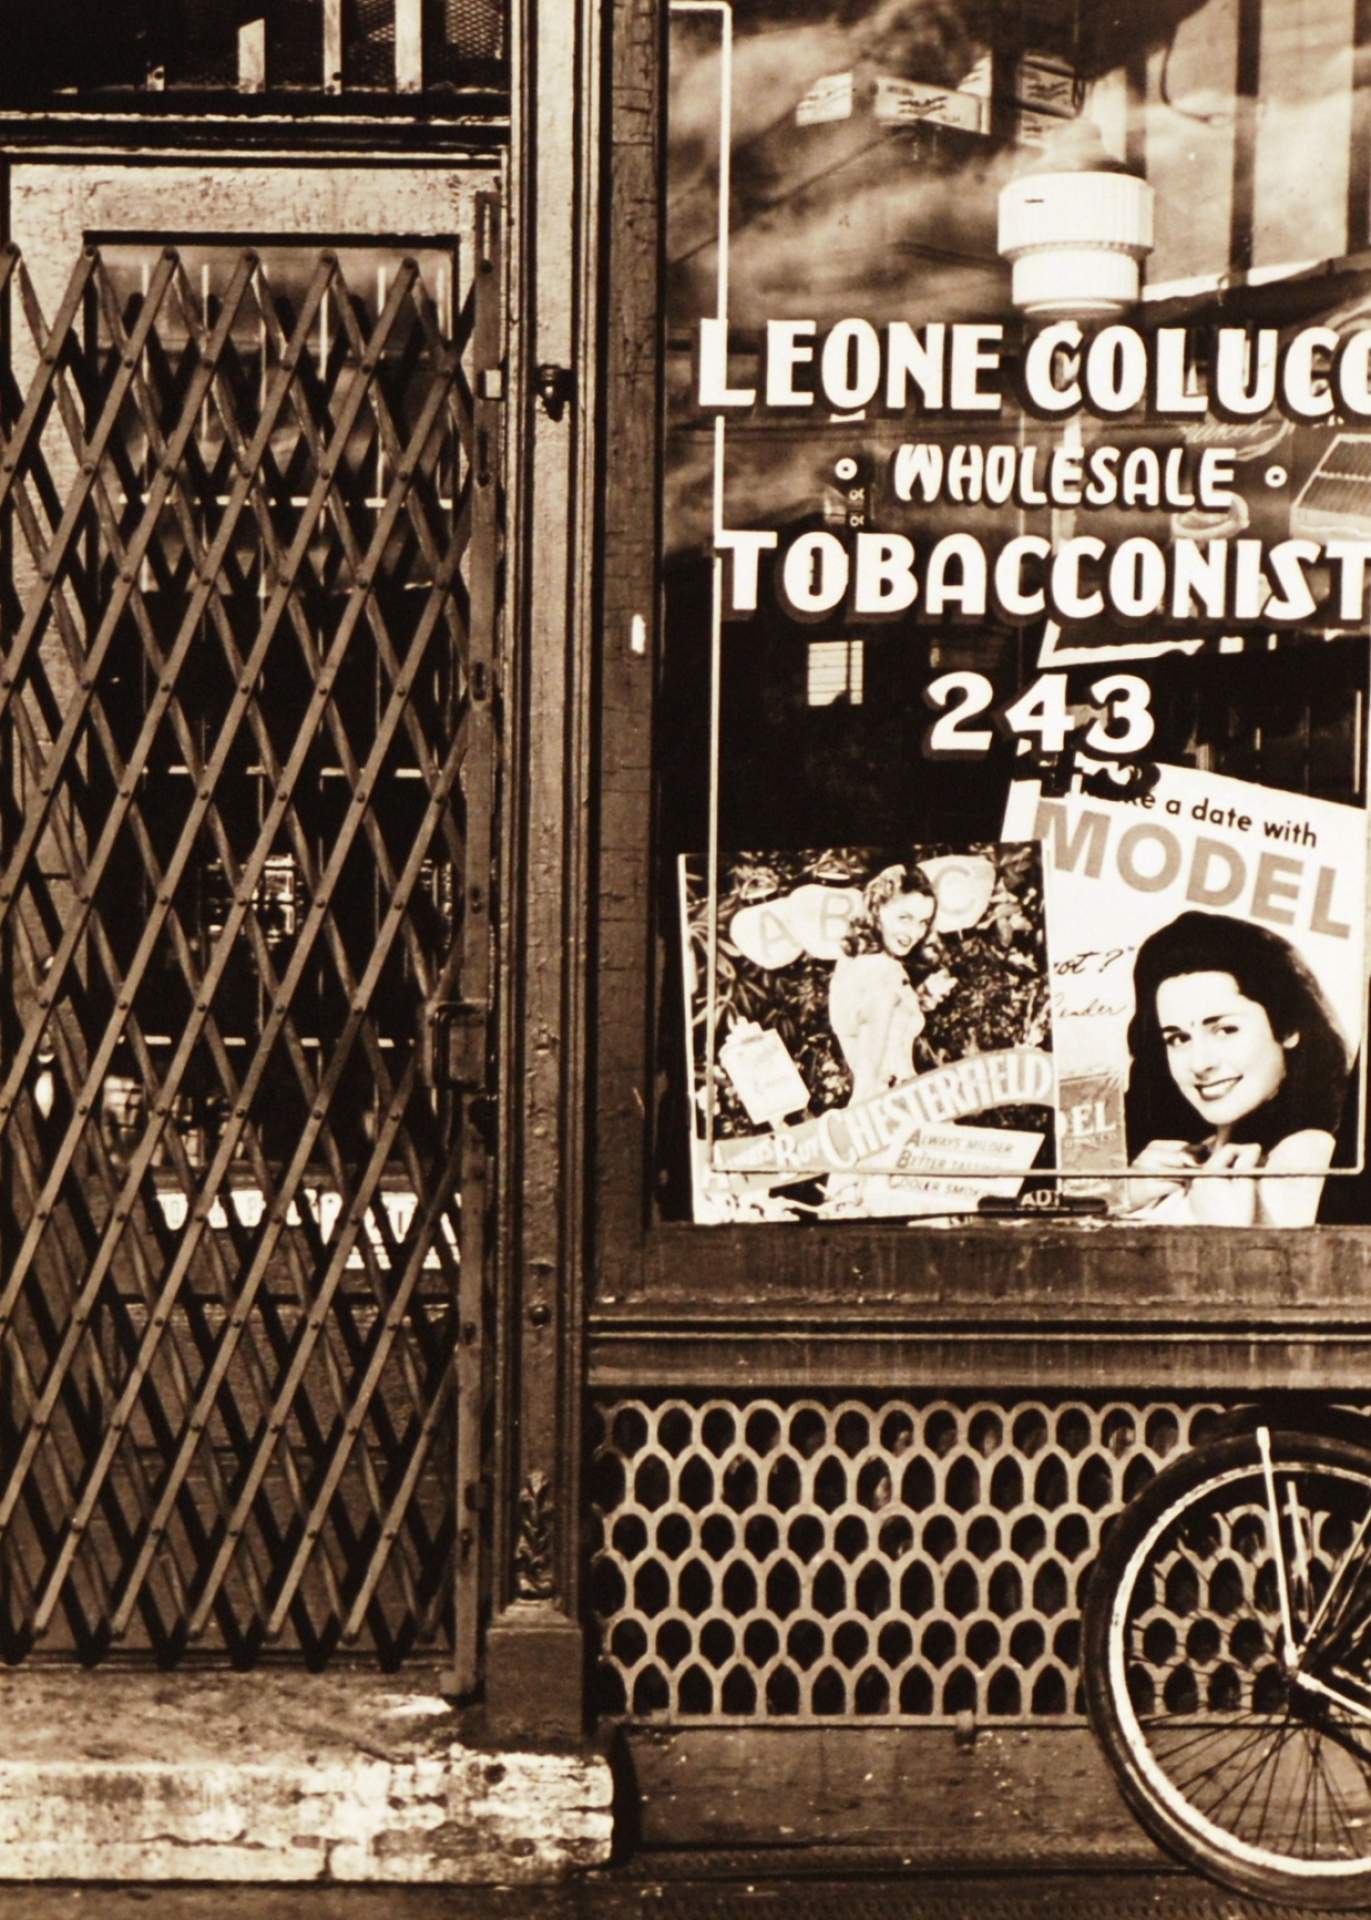 Untitled [Leone Colucci, Tobacconist]